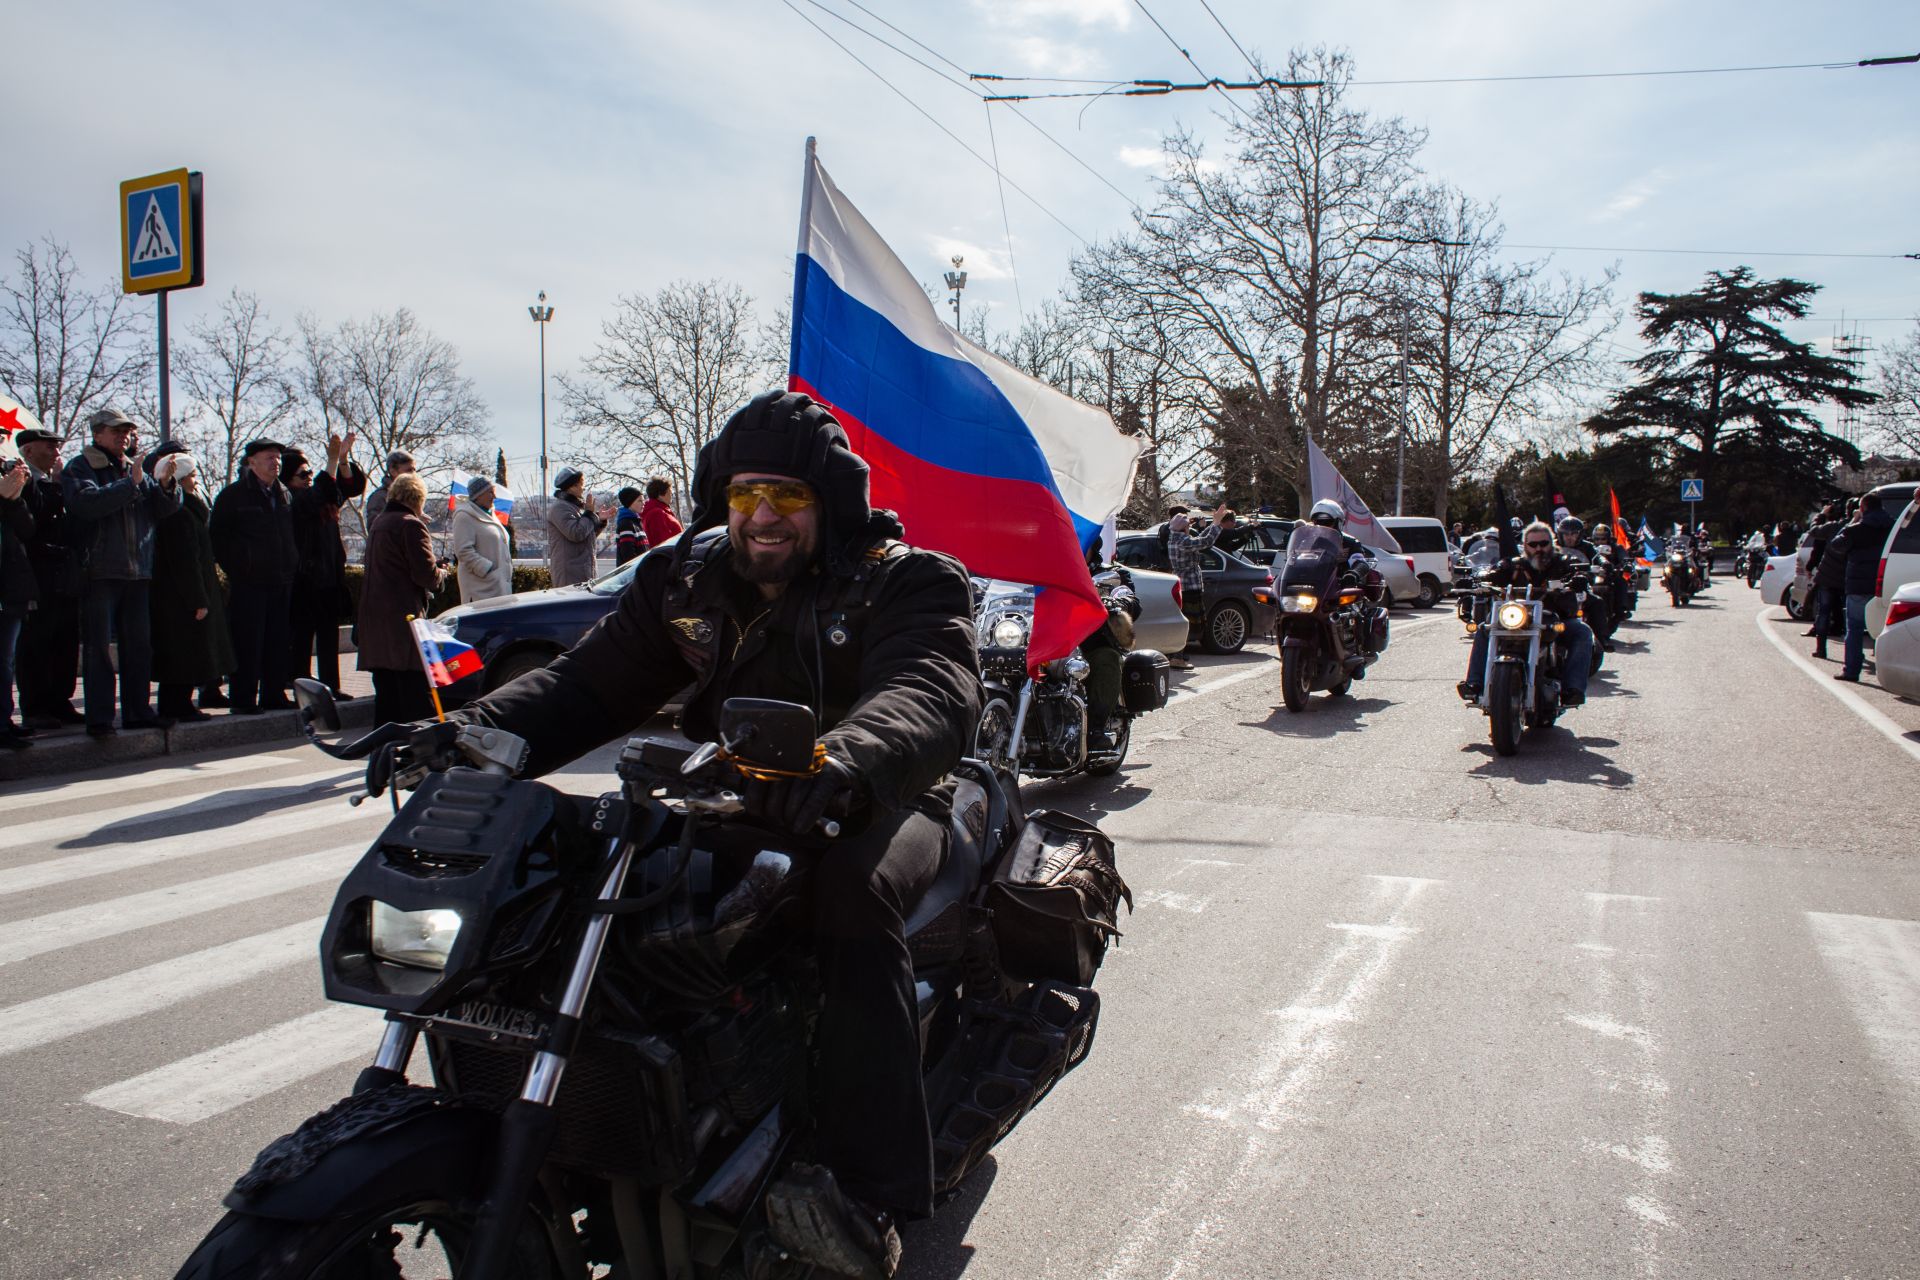 Александър Залдостанов води "Нощните вълци", наричани от медиите "рокерите на Путин", в автомобилен митинг, когато кримчани празнуват първата годишнина от референдума на 16 март, 2015 г. в Севастопол